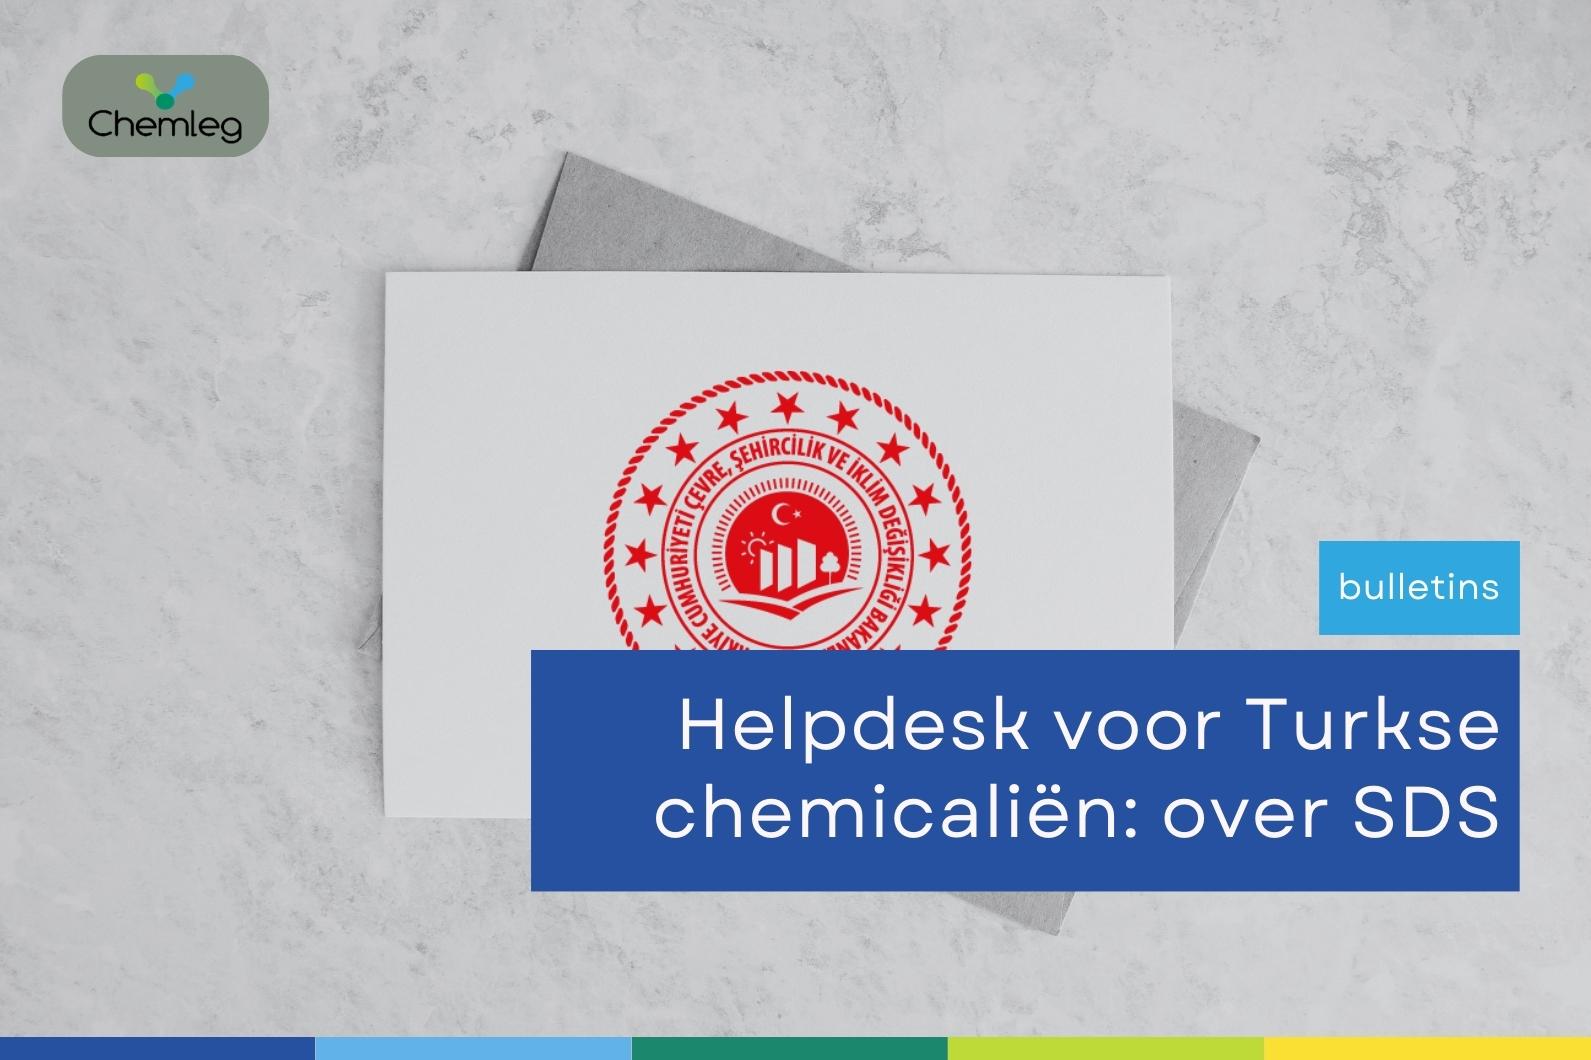 Helpdesk voor Turkse chemicaliën: over SDS